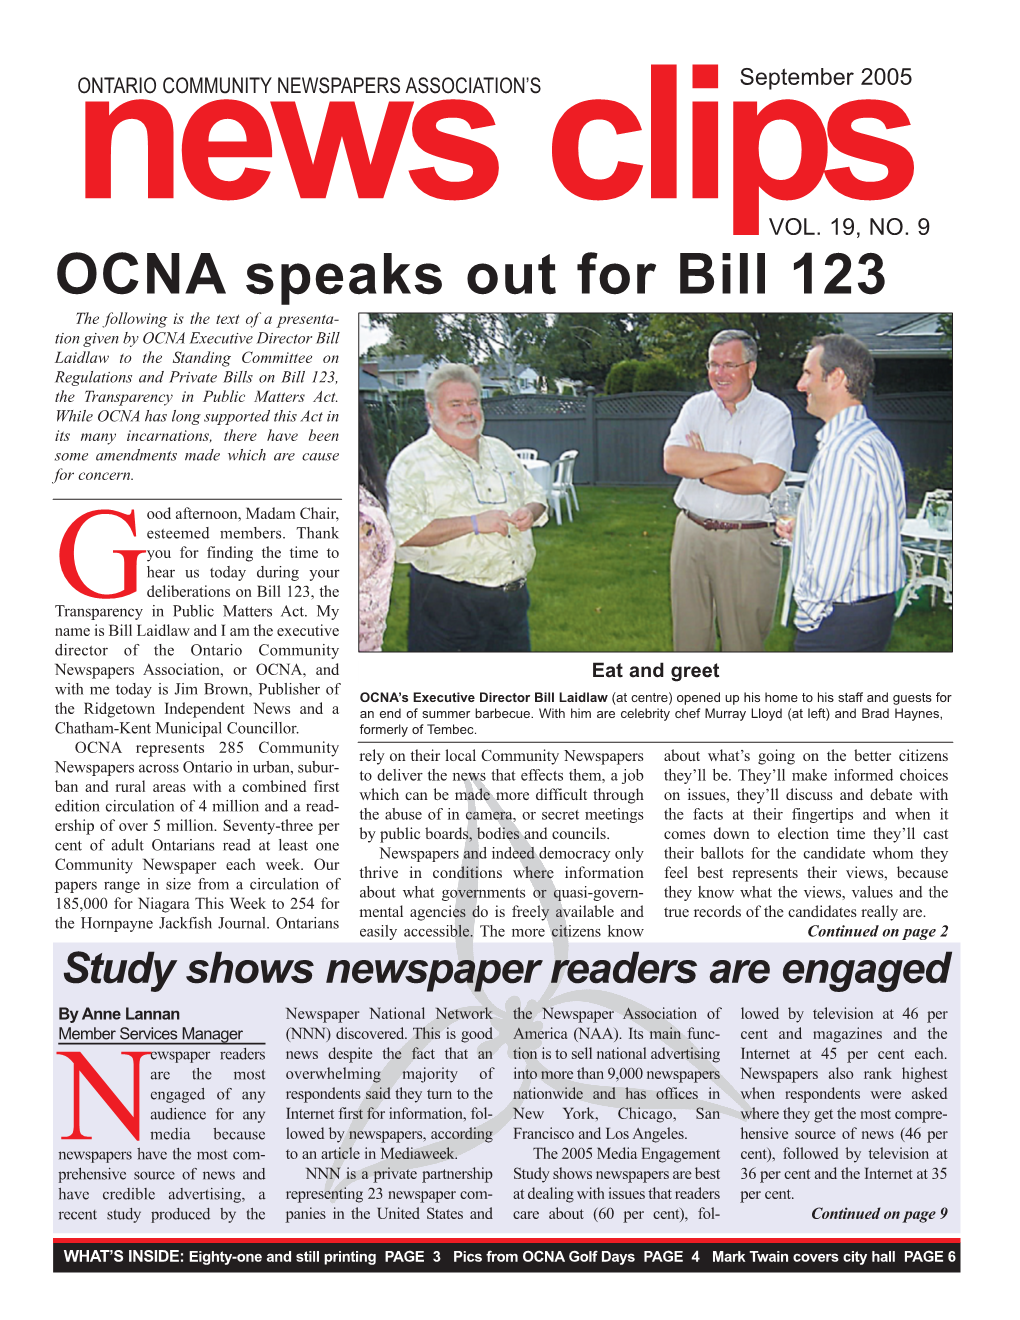 OCNA Speaks out for Bill